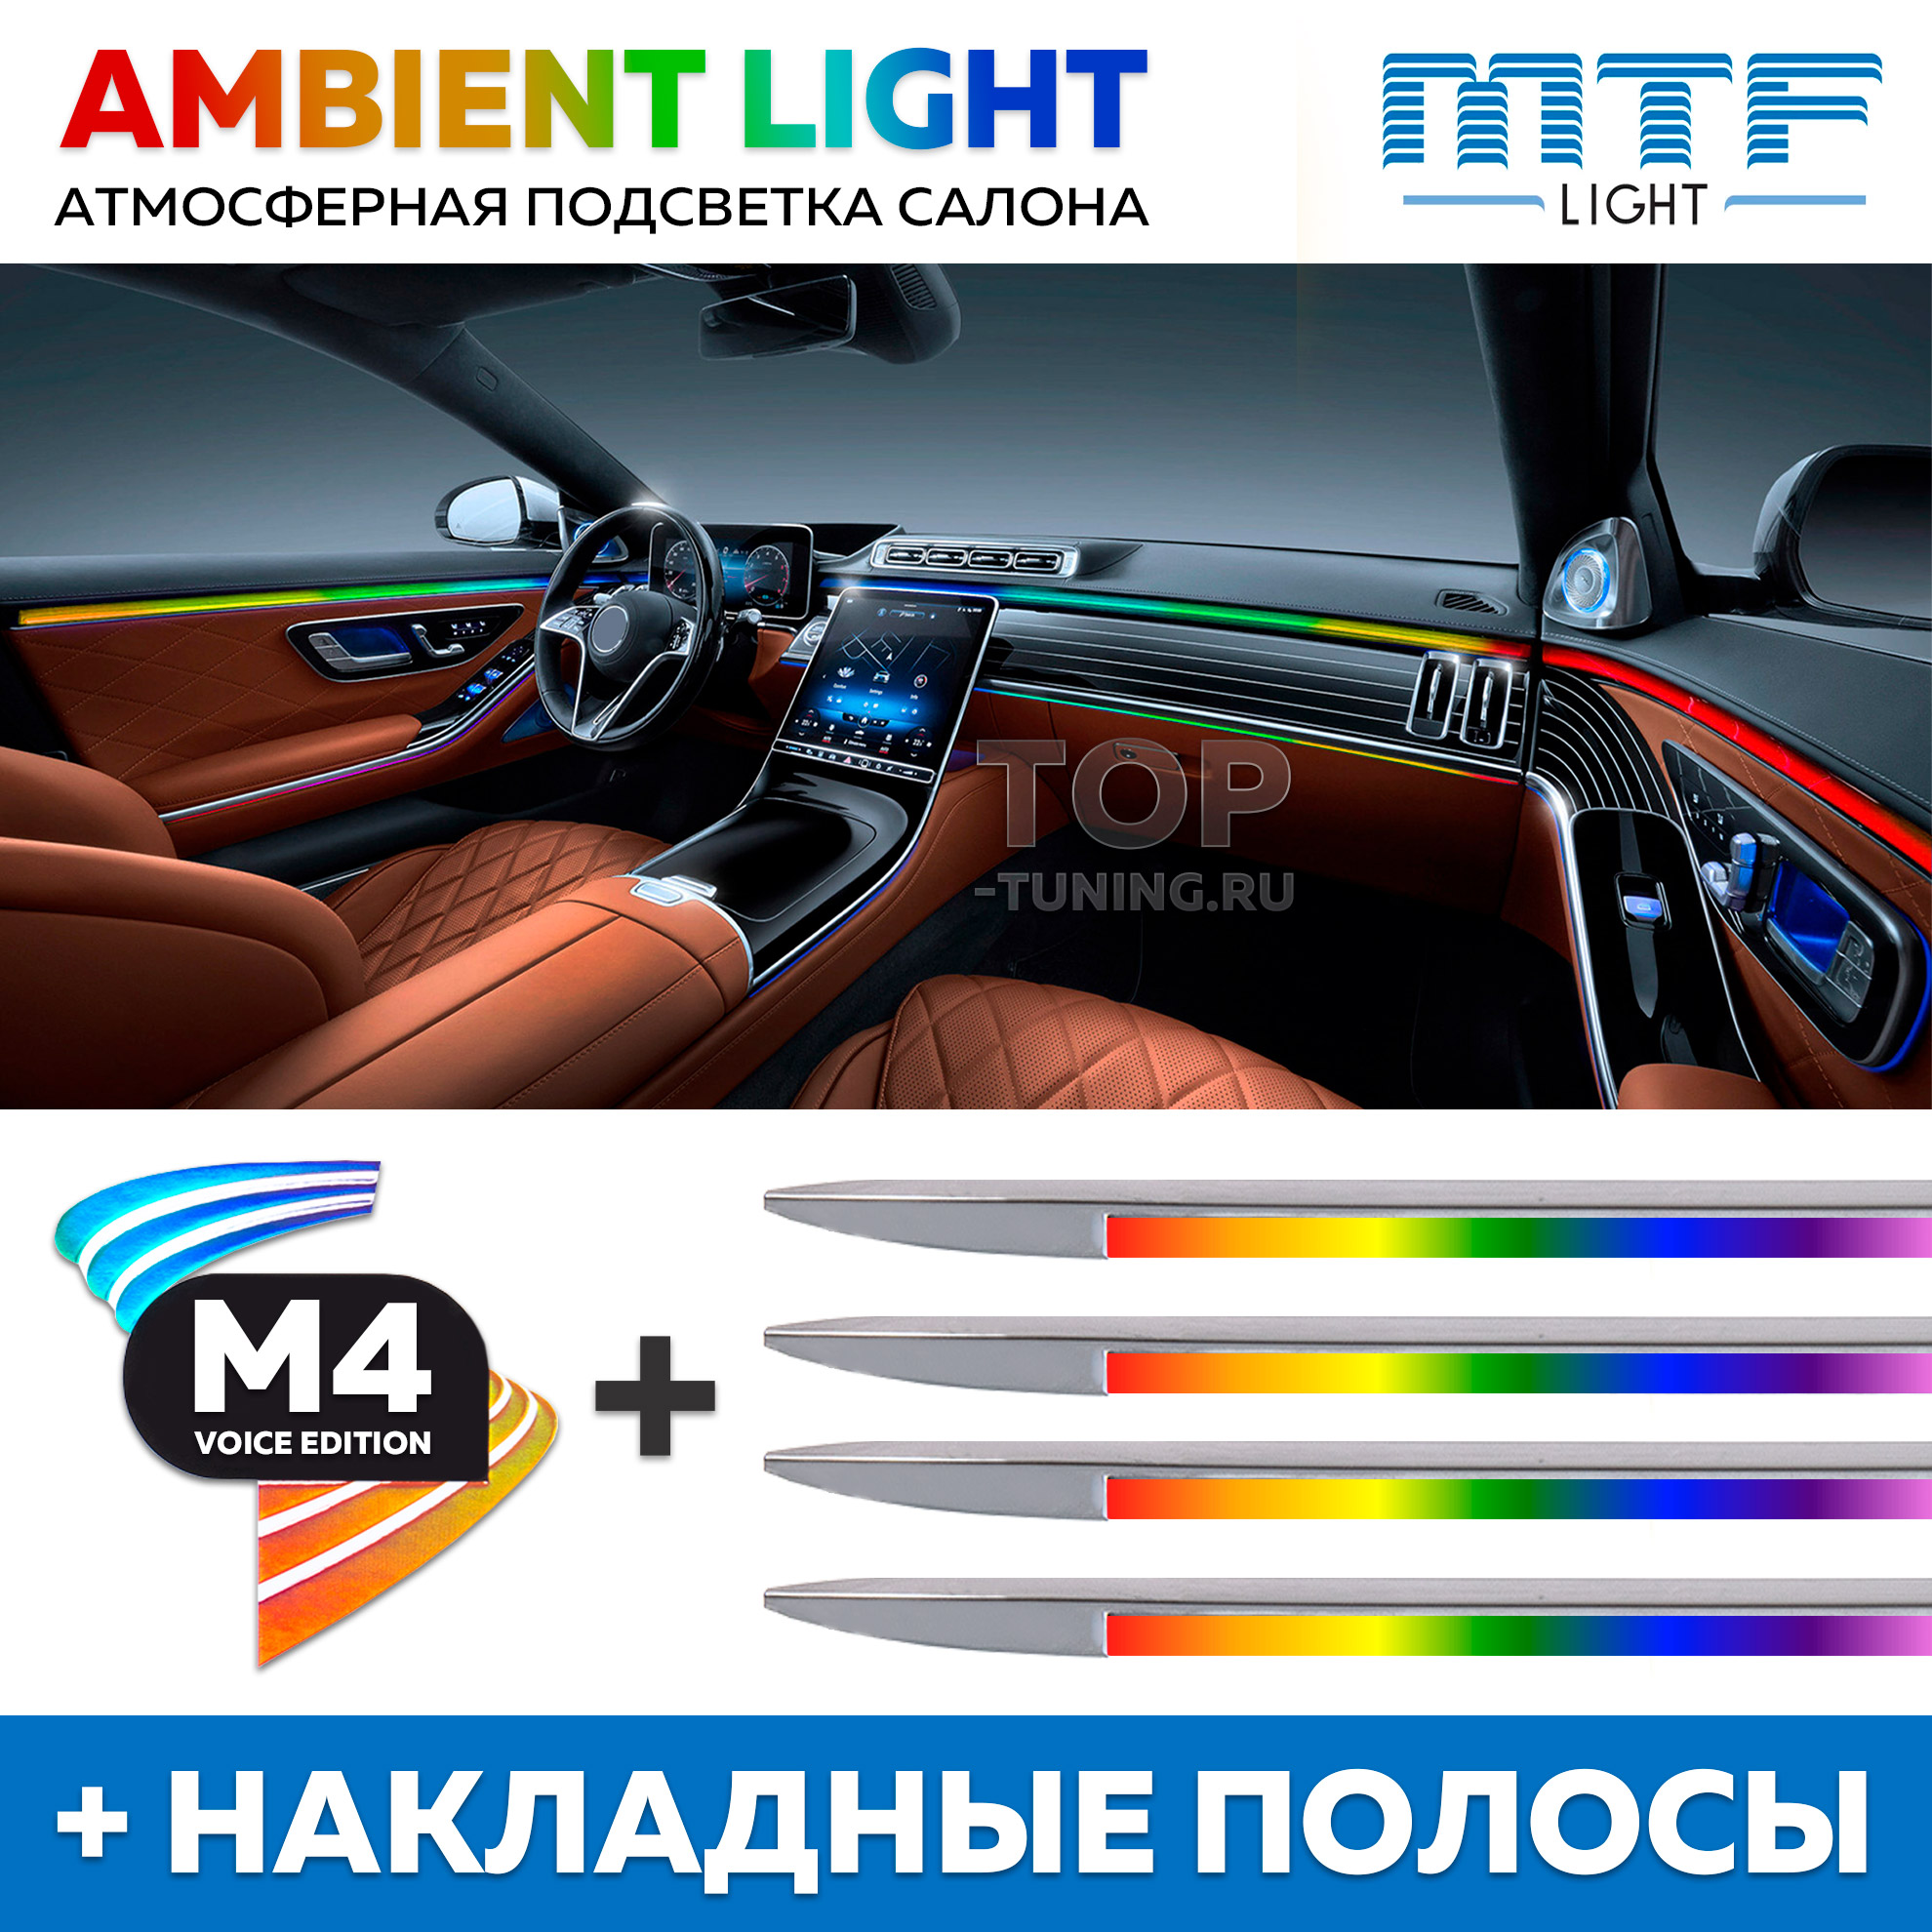 Подсветка автомобиля – доступный и эффектный тюнинг